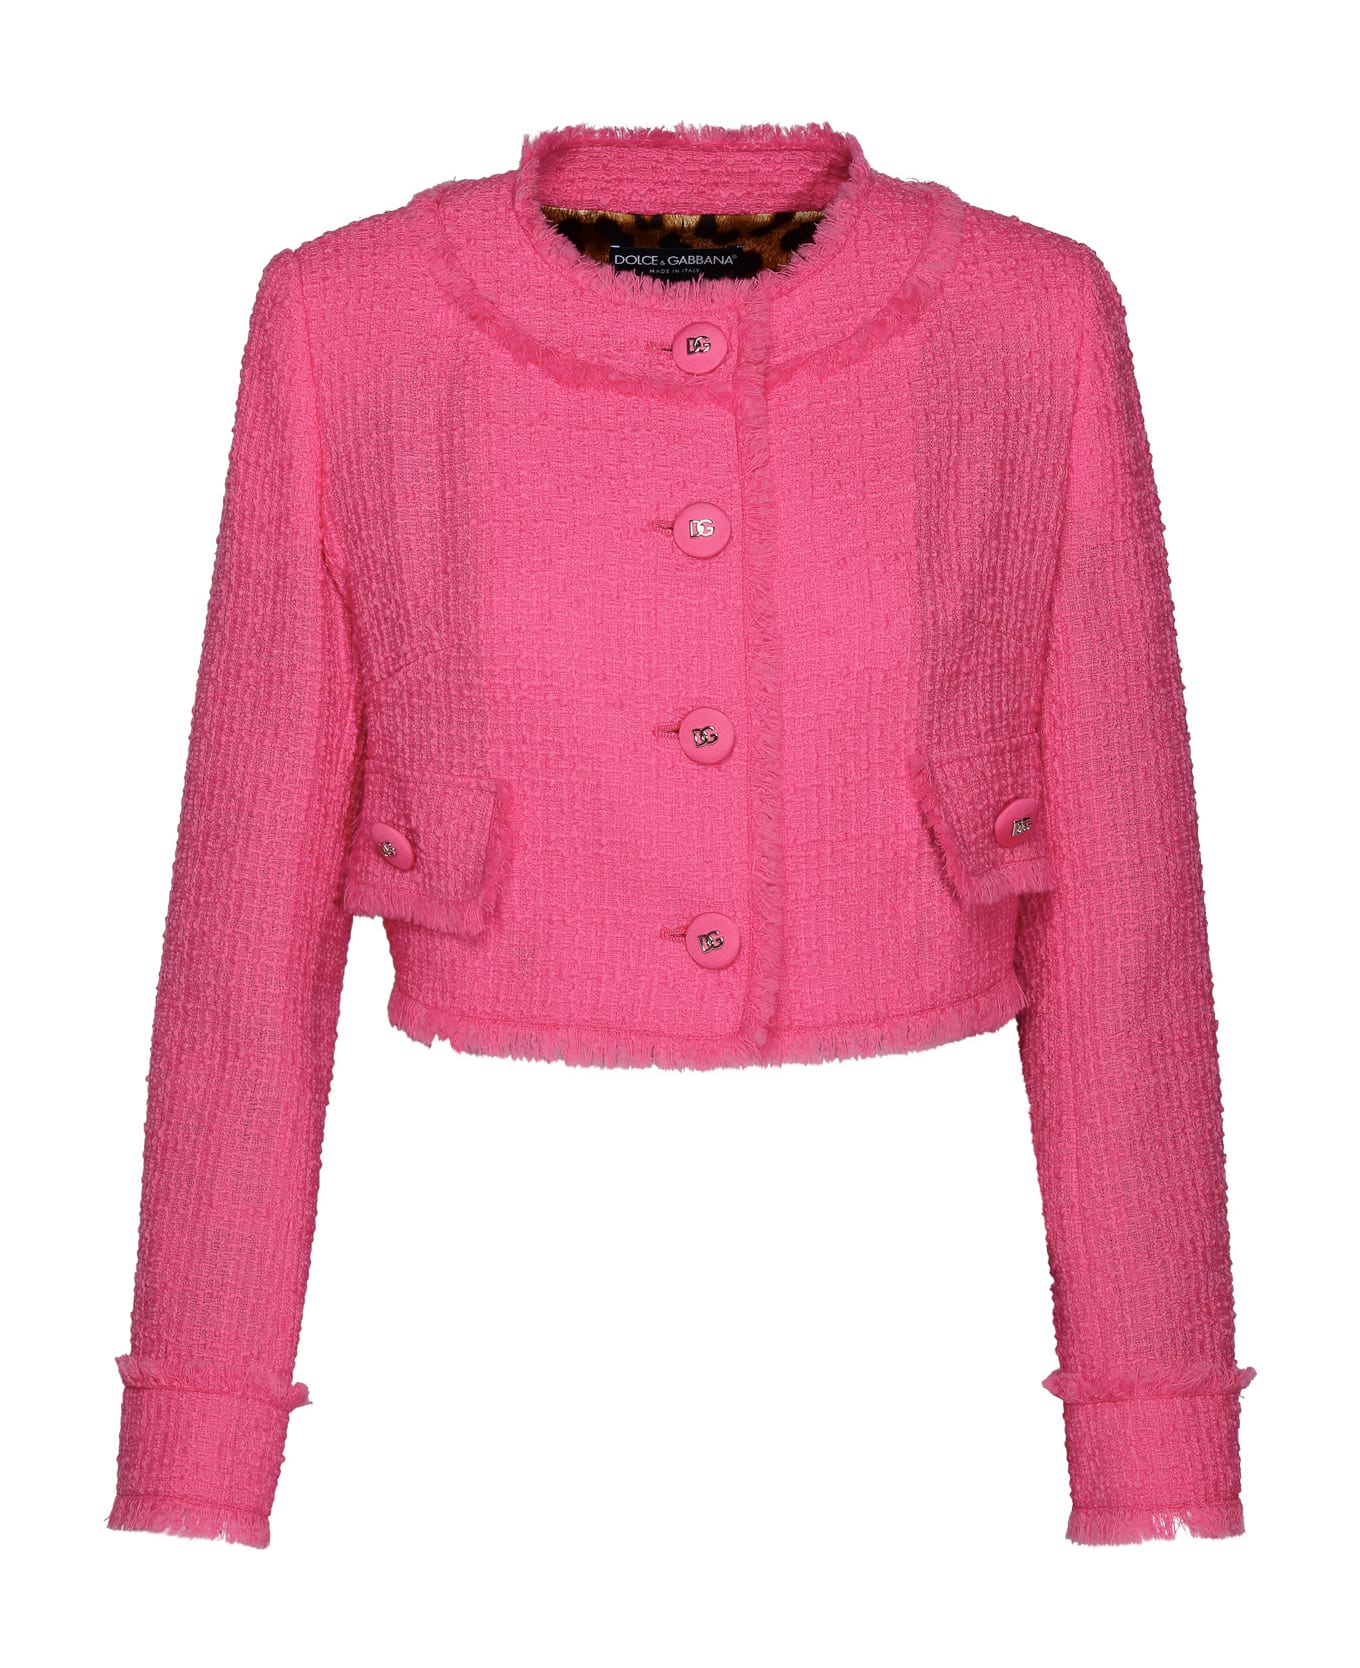 Dolce & Gabbana Tweed Jacket - Pink カーディガン